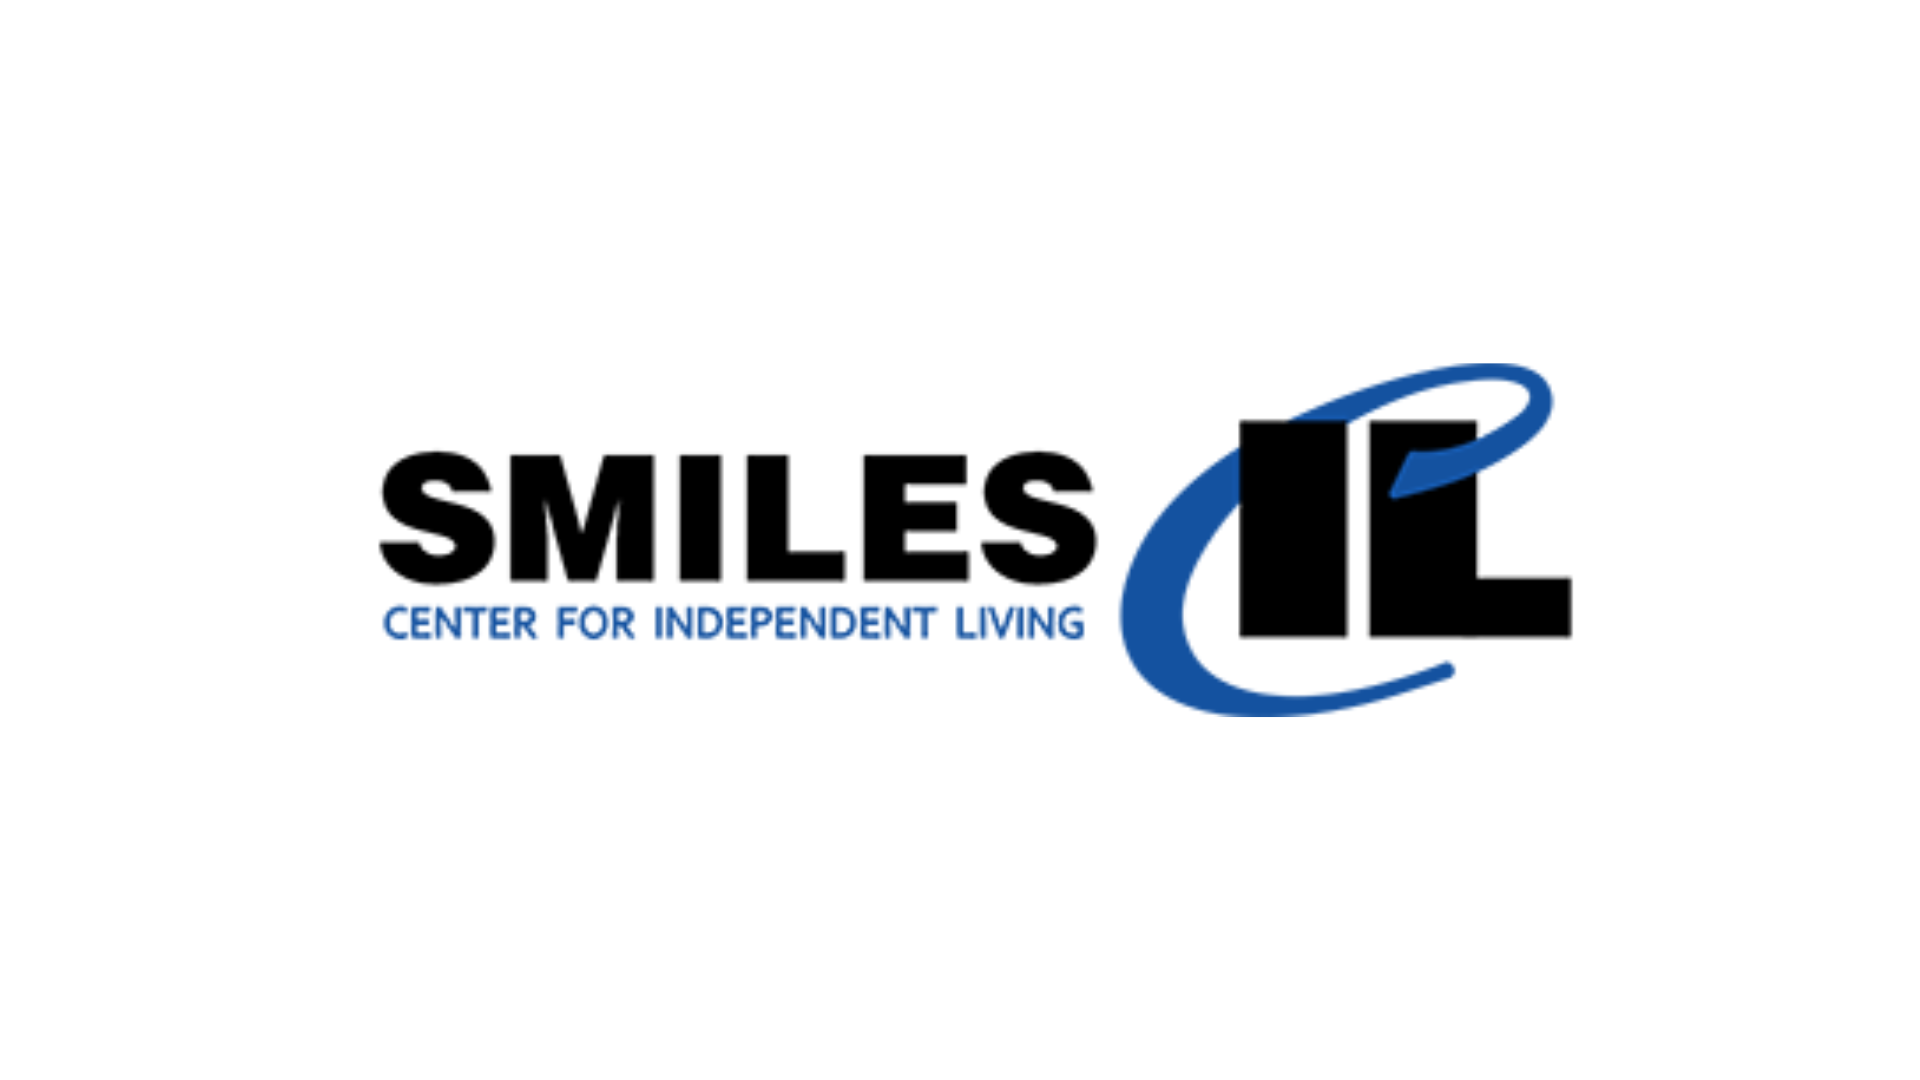 SMILES CIL logo